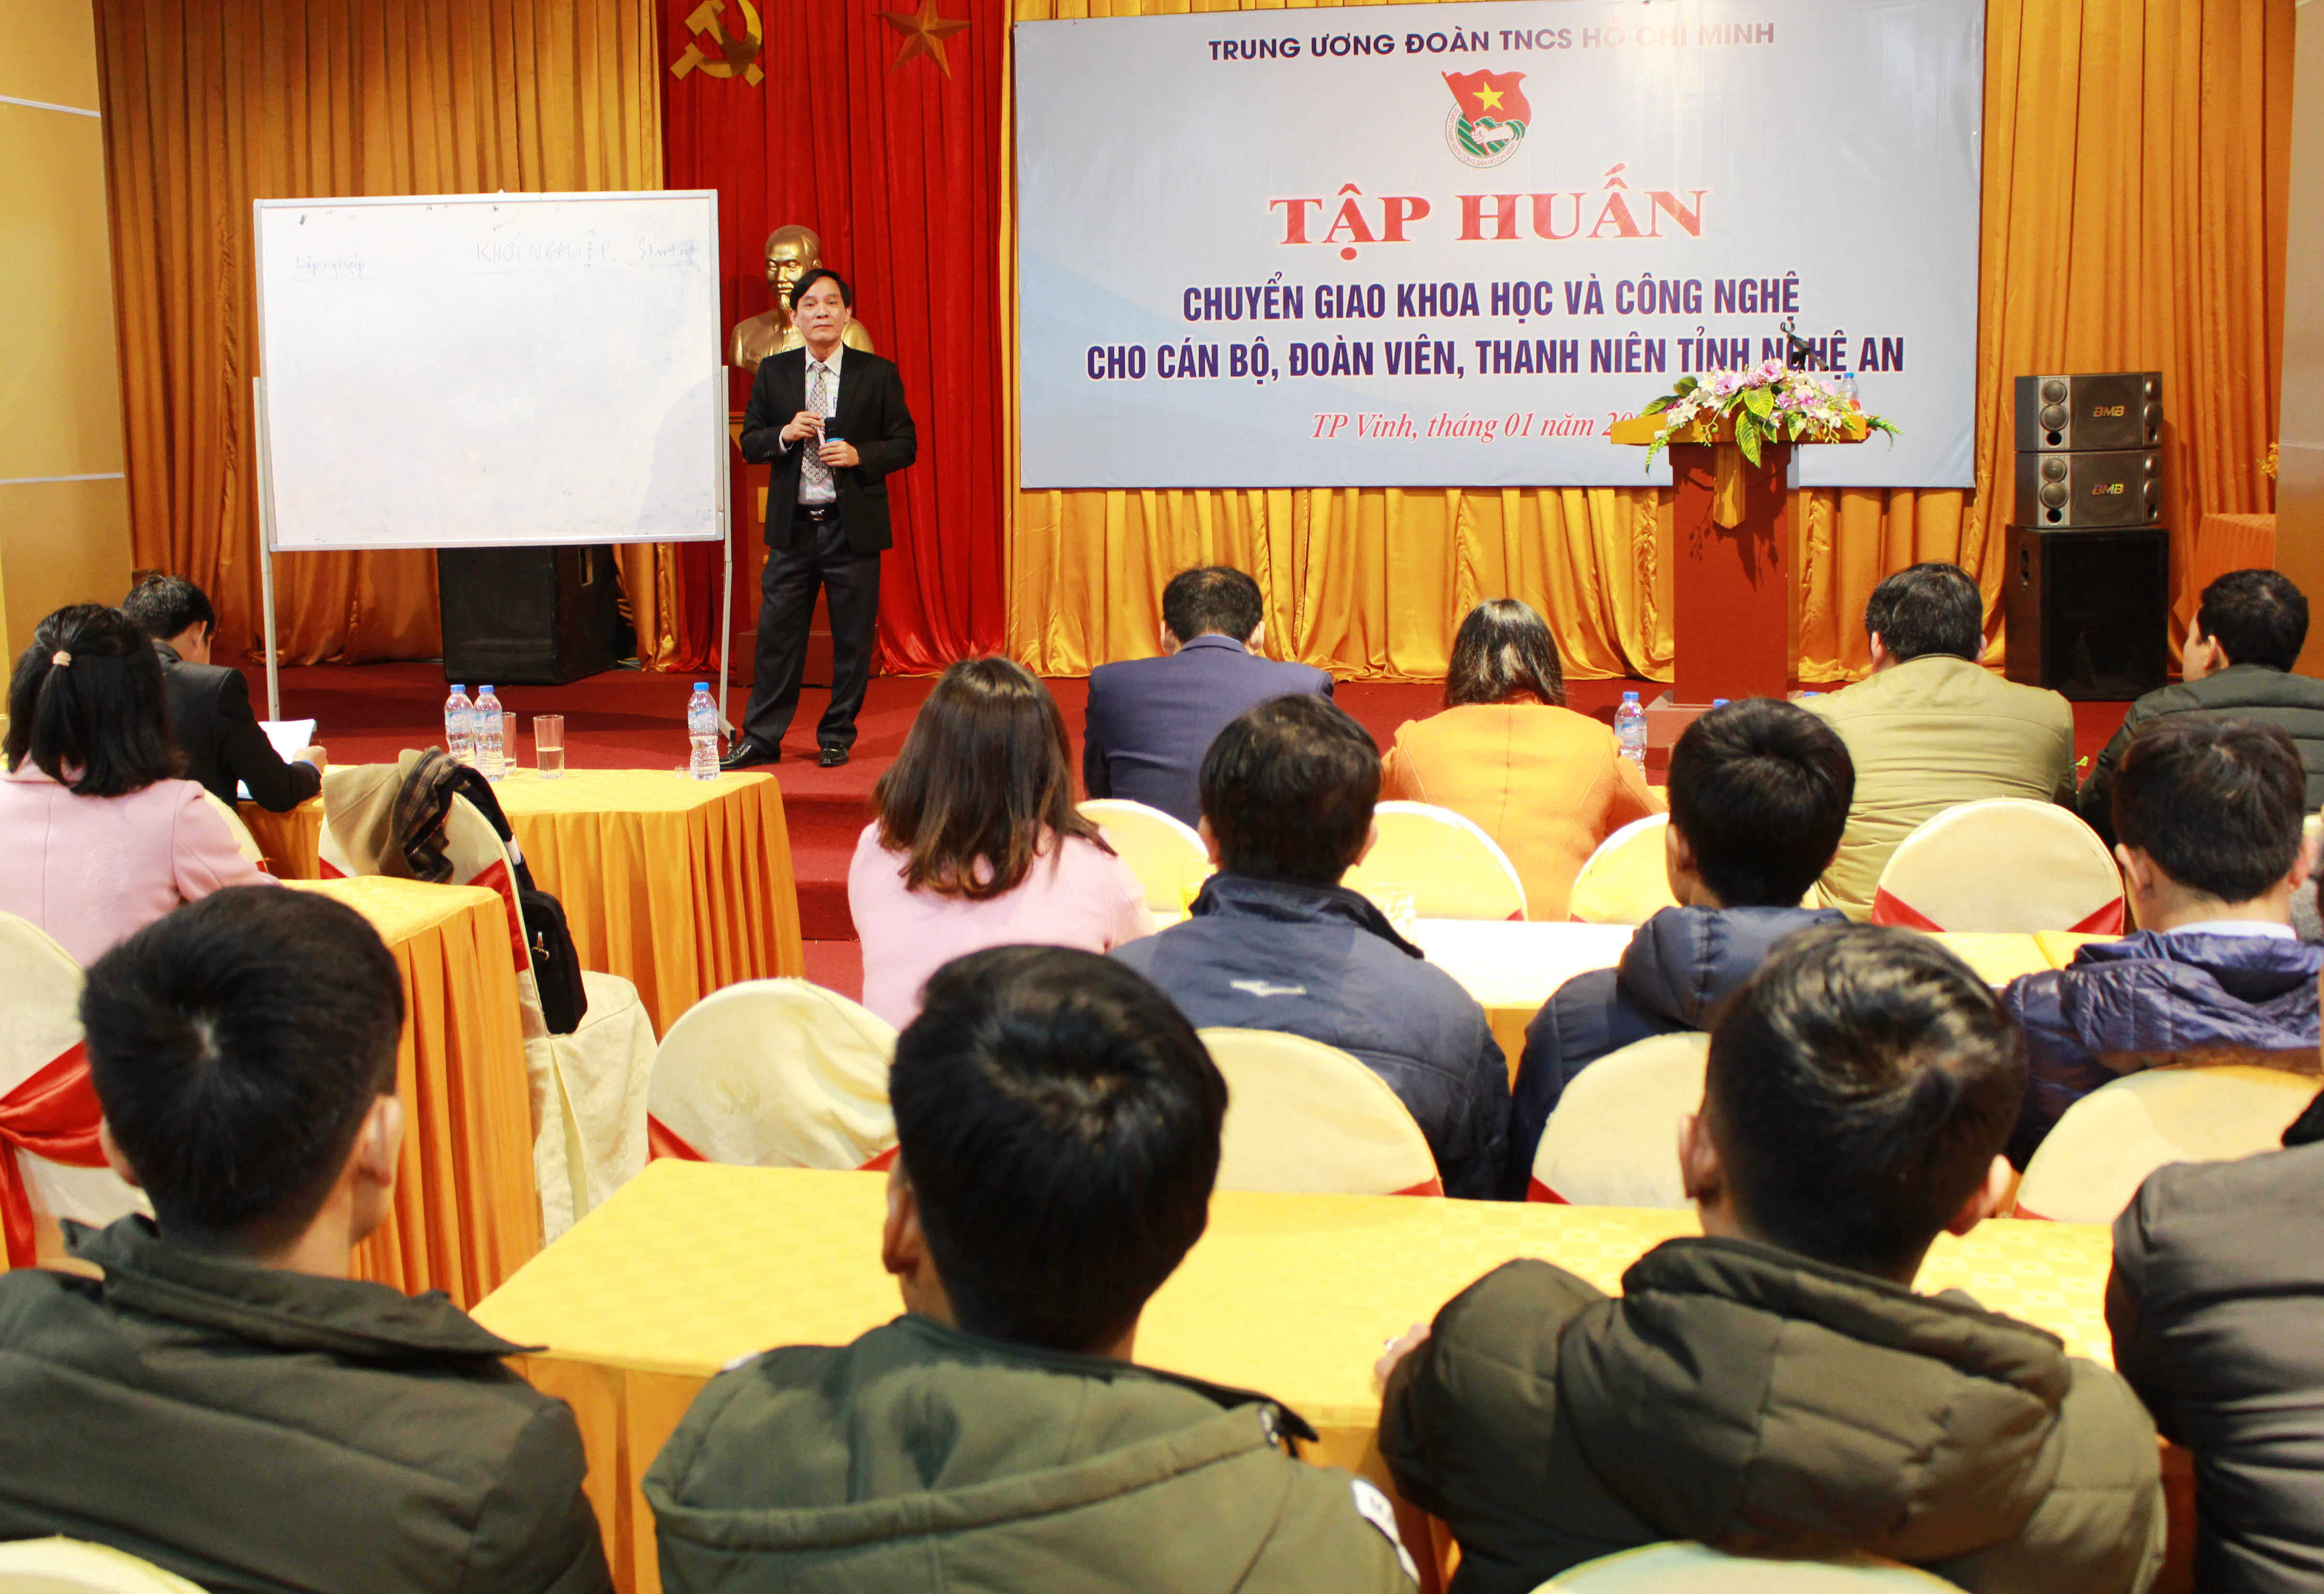  100 học viên là cán bộ, đoàn viên thanh niên tỉnh Nghệ An tham gia buổi tập huấn. Ảnh: Phương Thúy